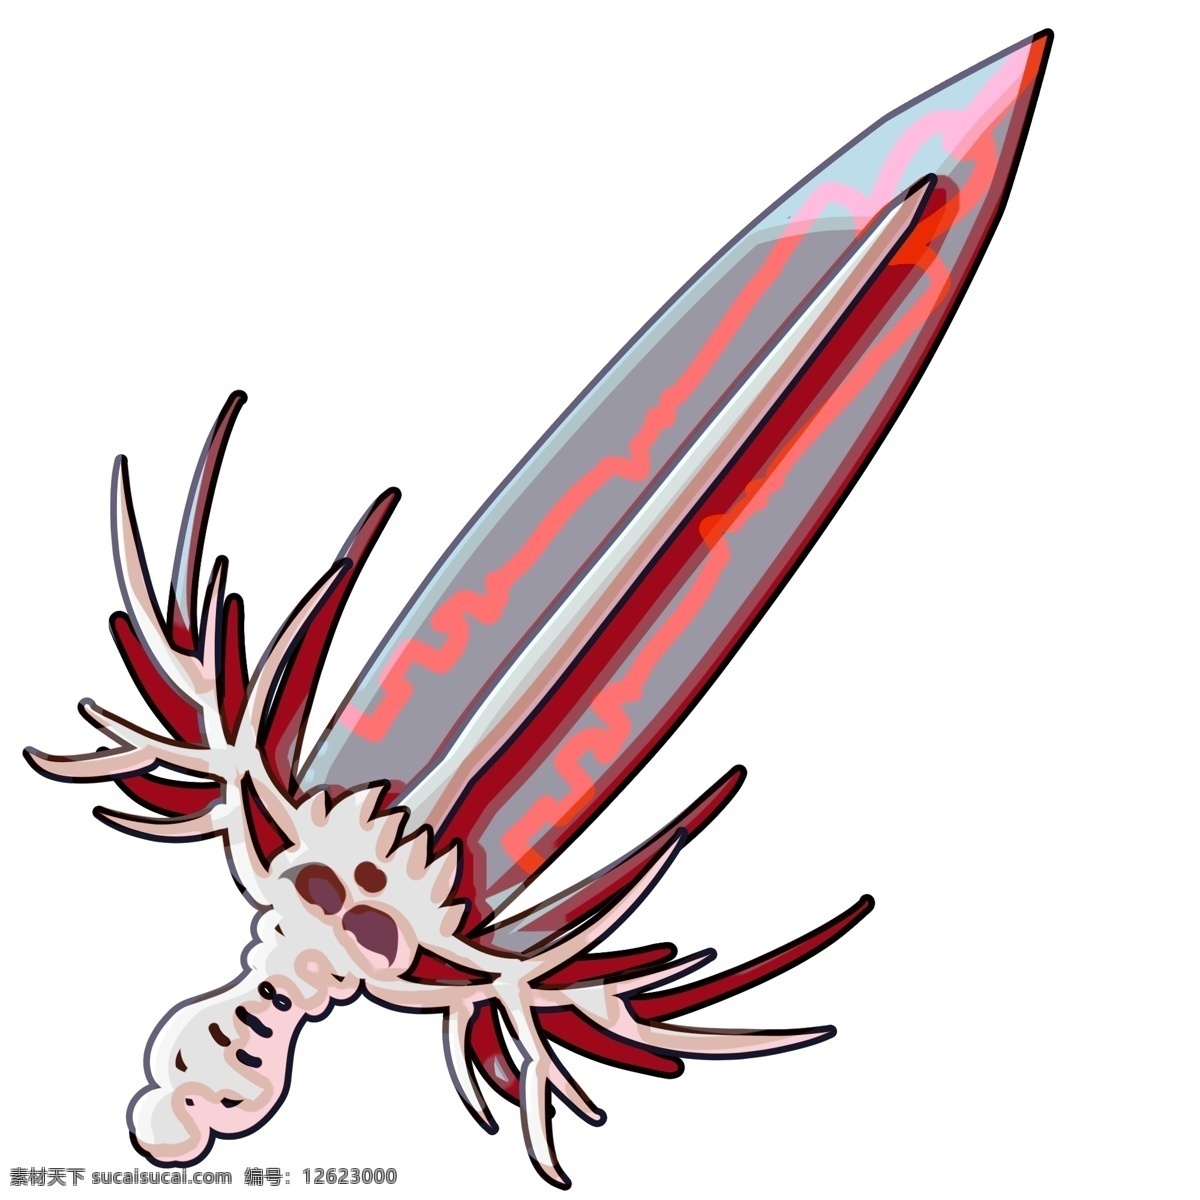 红色 宝剑 装饰 插画 红色的宝剑 漂亮的宝剑 创意宝剑 锋利的宝剑 宝剑装饰 宝剑插画 立体宝剑